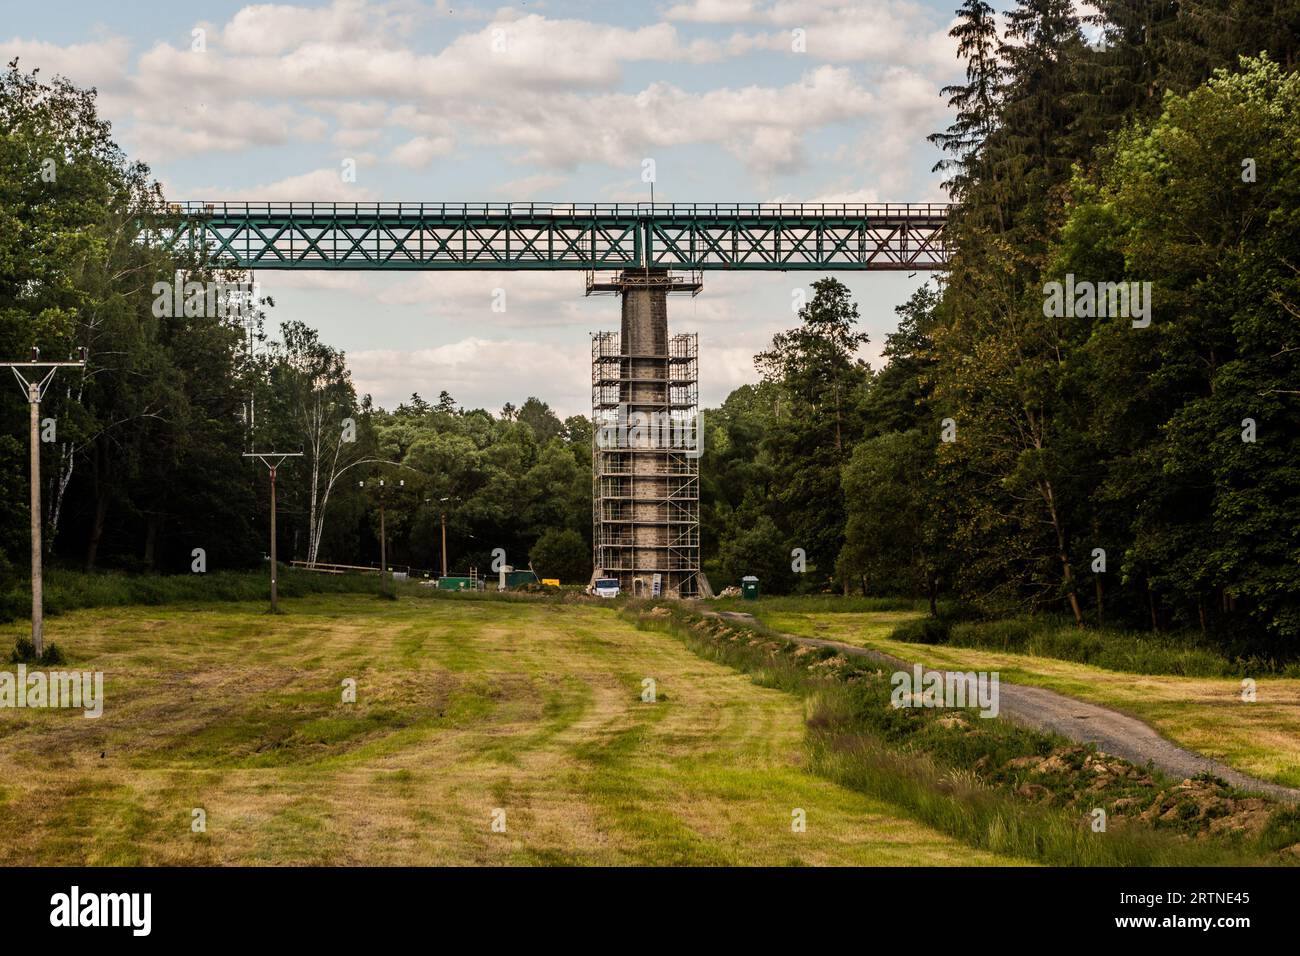 Railway bridge Vilemov, Czech Republic Stock Photo